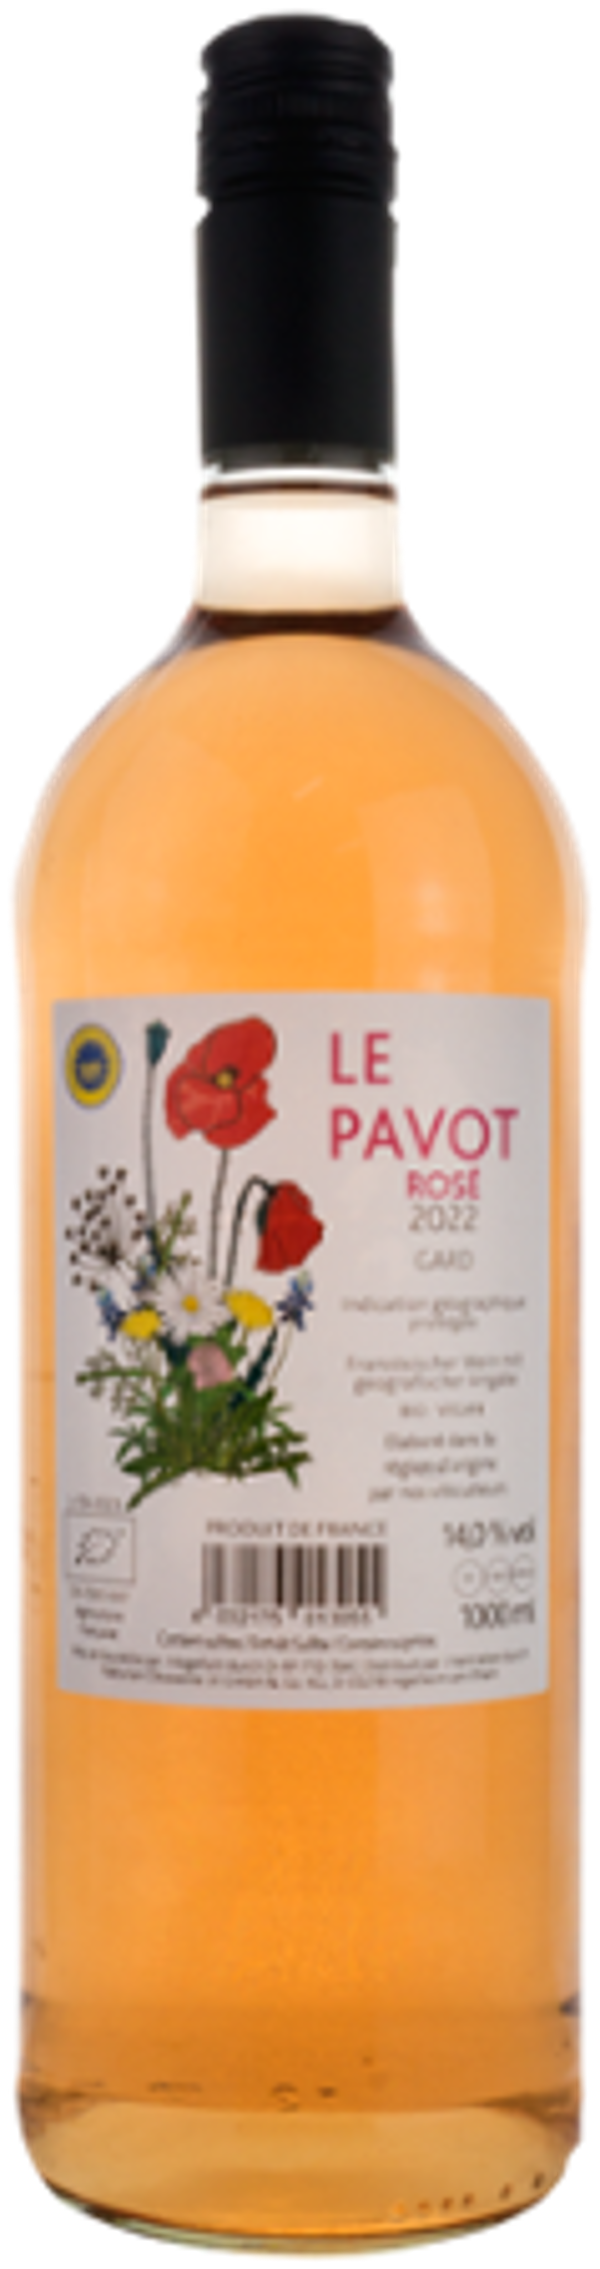 Produktfoto zu Le Pavot Rosé